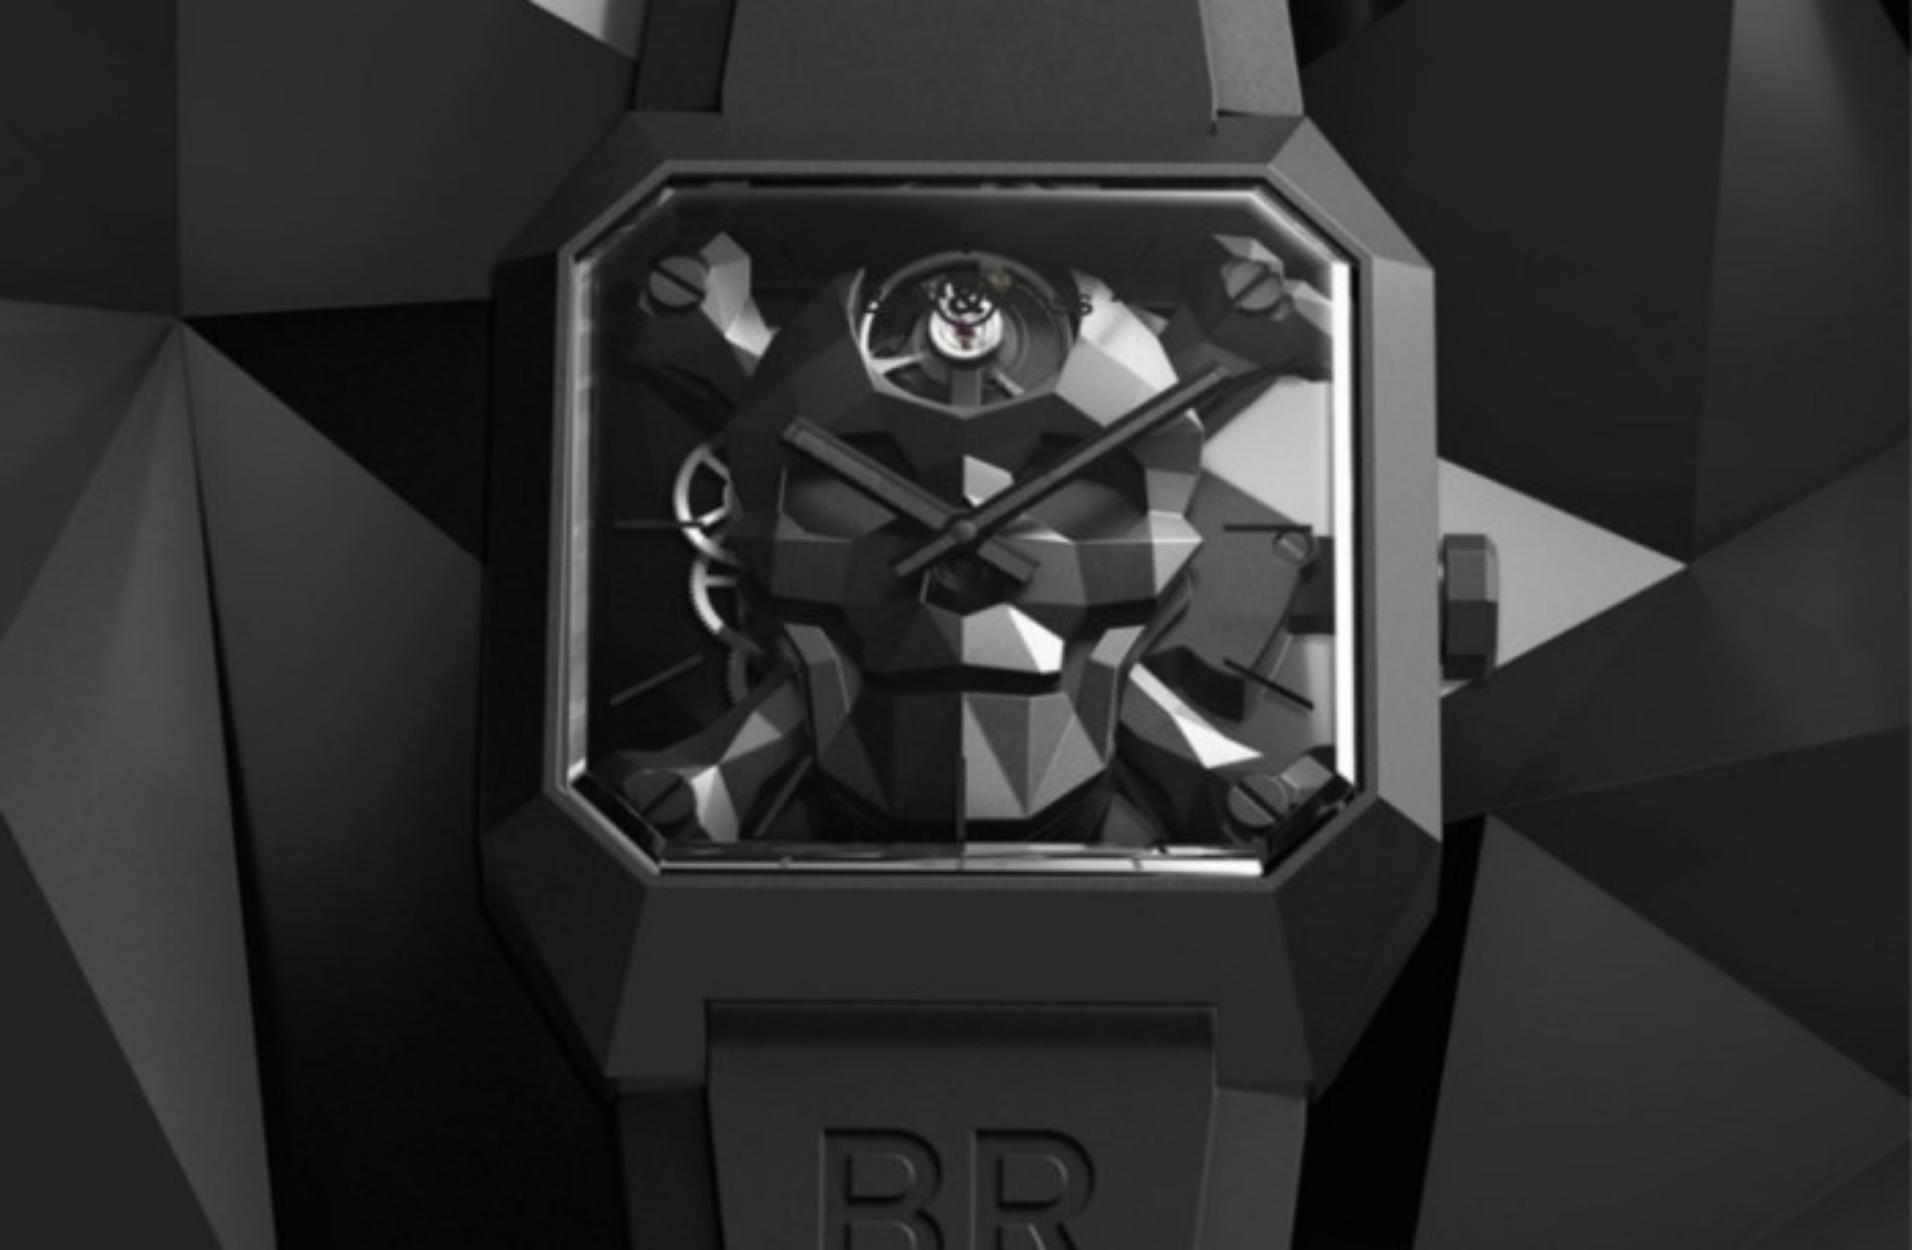 Η Bell & Ross κυκλοφόρησε ένα από τα πιο εντυπωσιακά ρολόγια που είδαμε φέτος